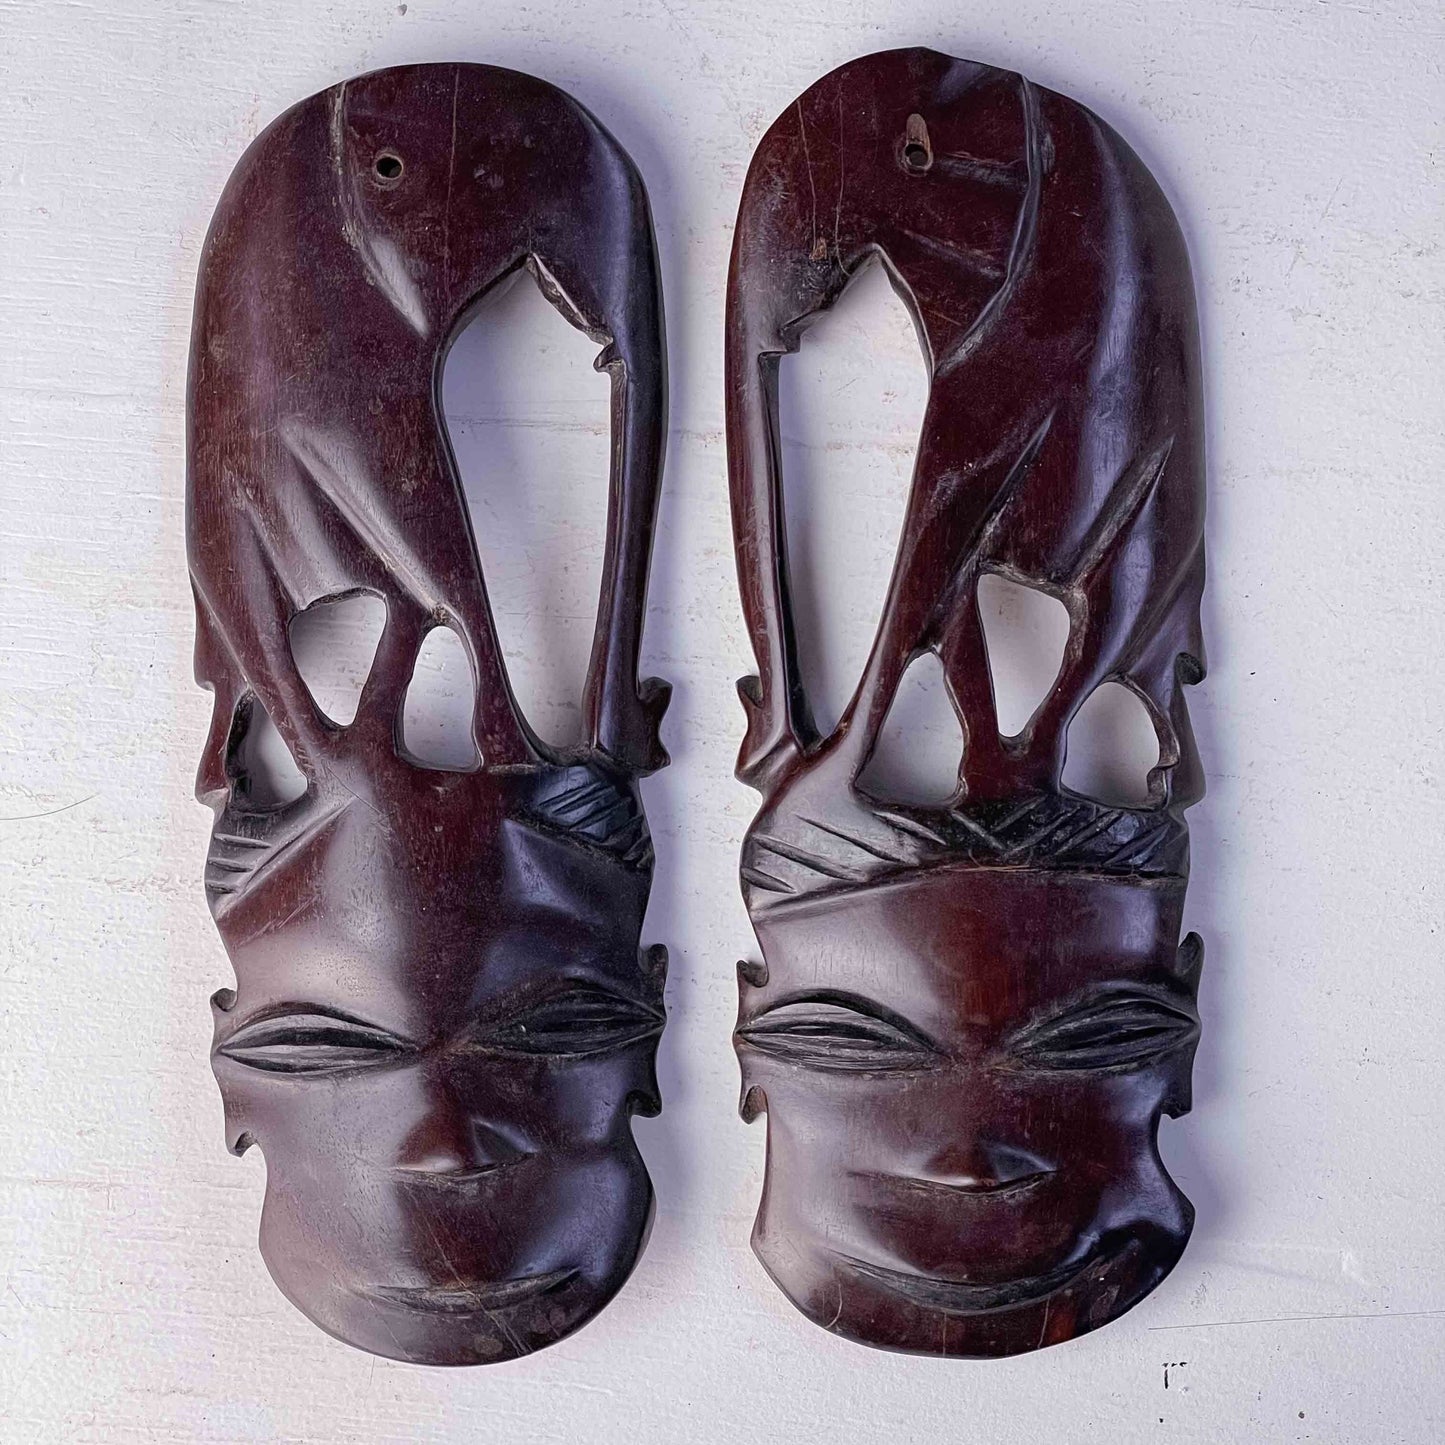 Afrikanske masker - Frk. Rose